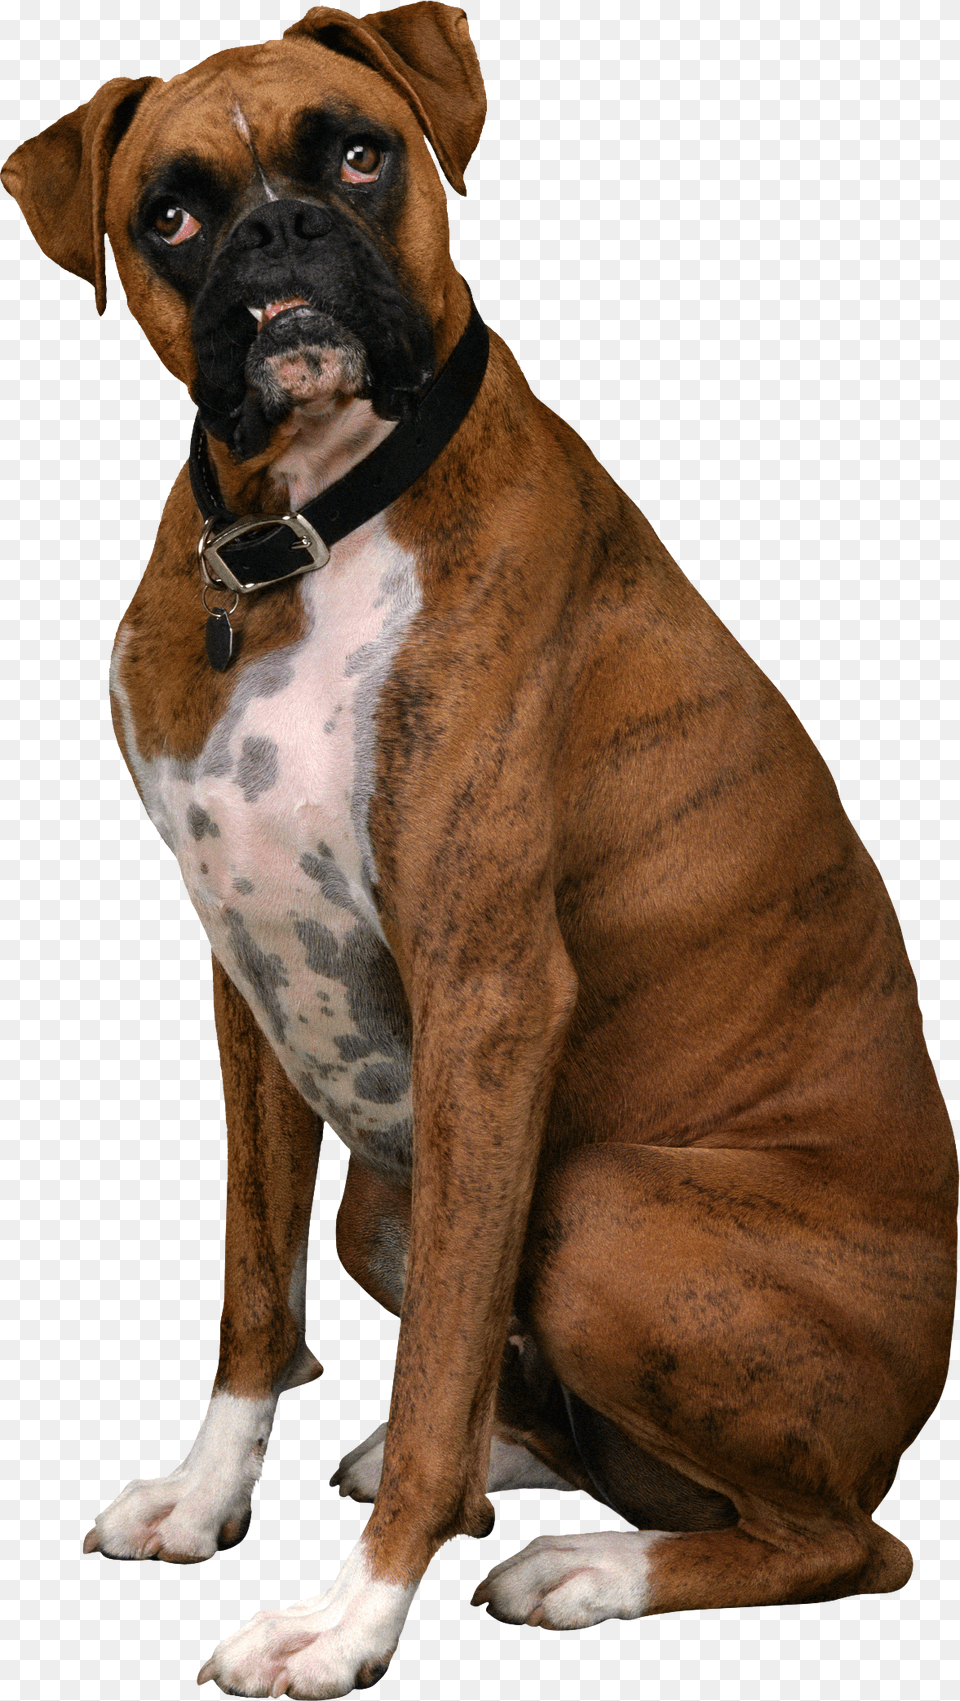 Dog, Animal, Boxer, Bulldog, Canine Png Image